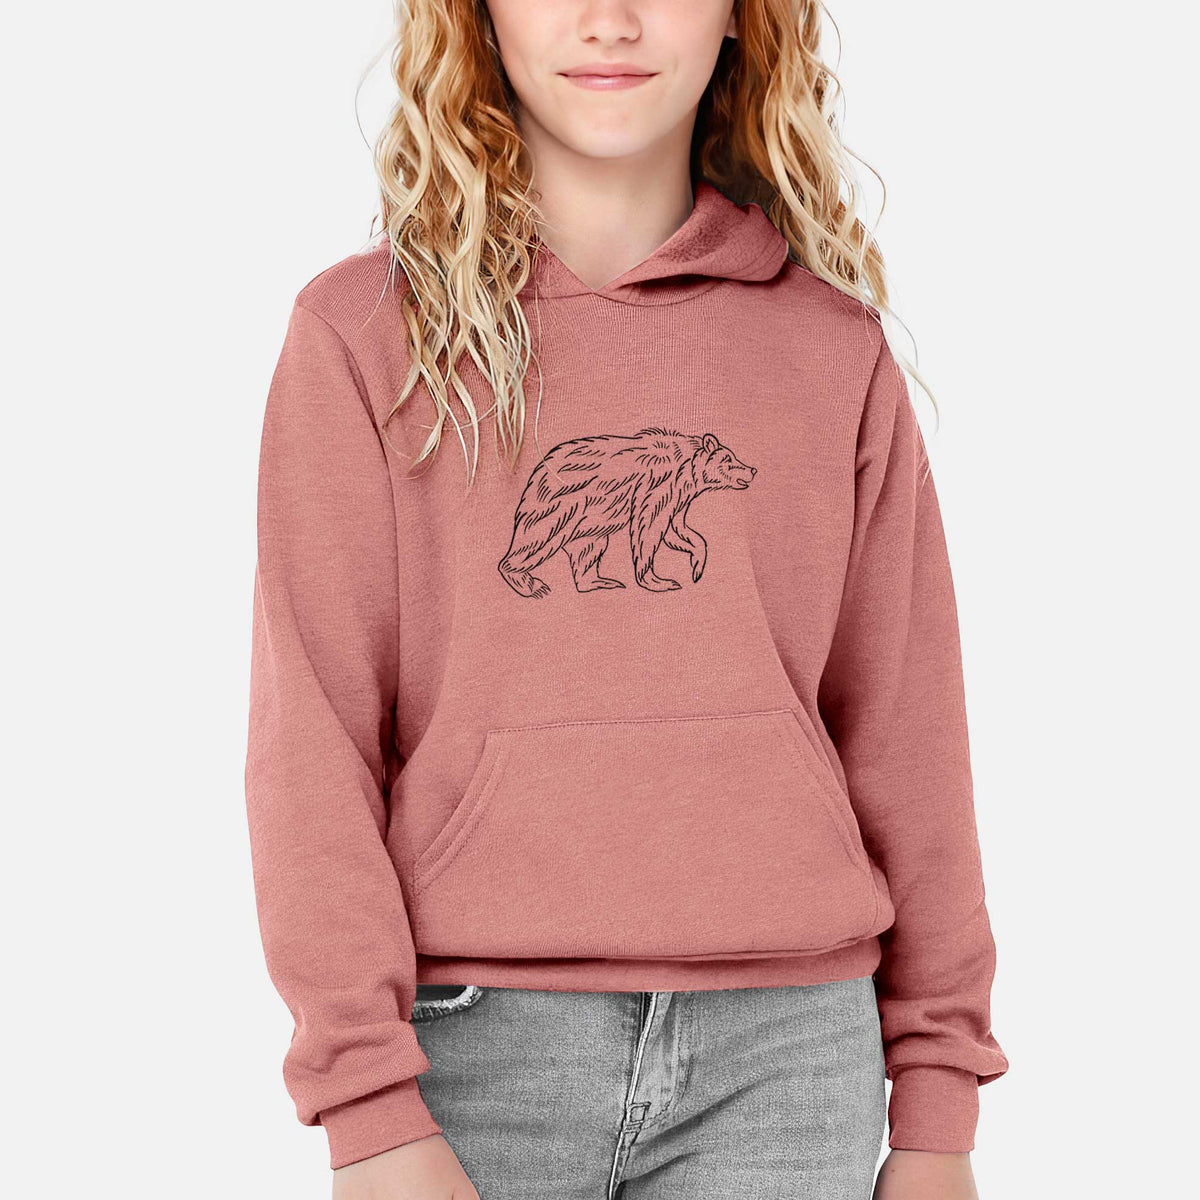 Brown Bear - Youth Hoodie Sweatshirt